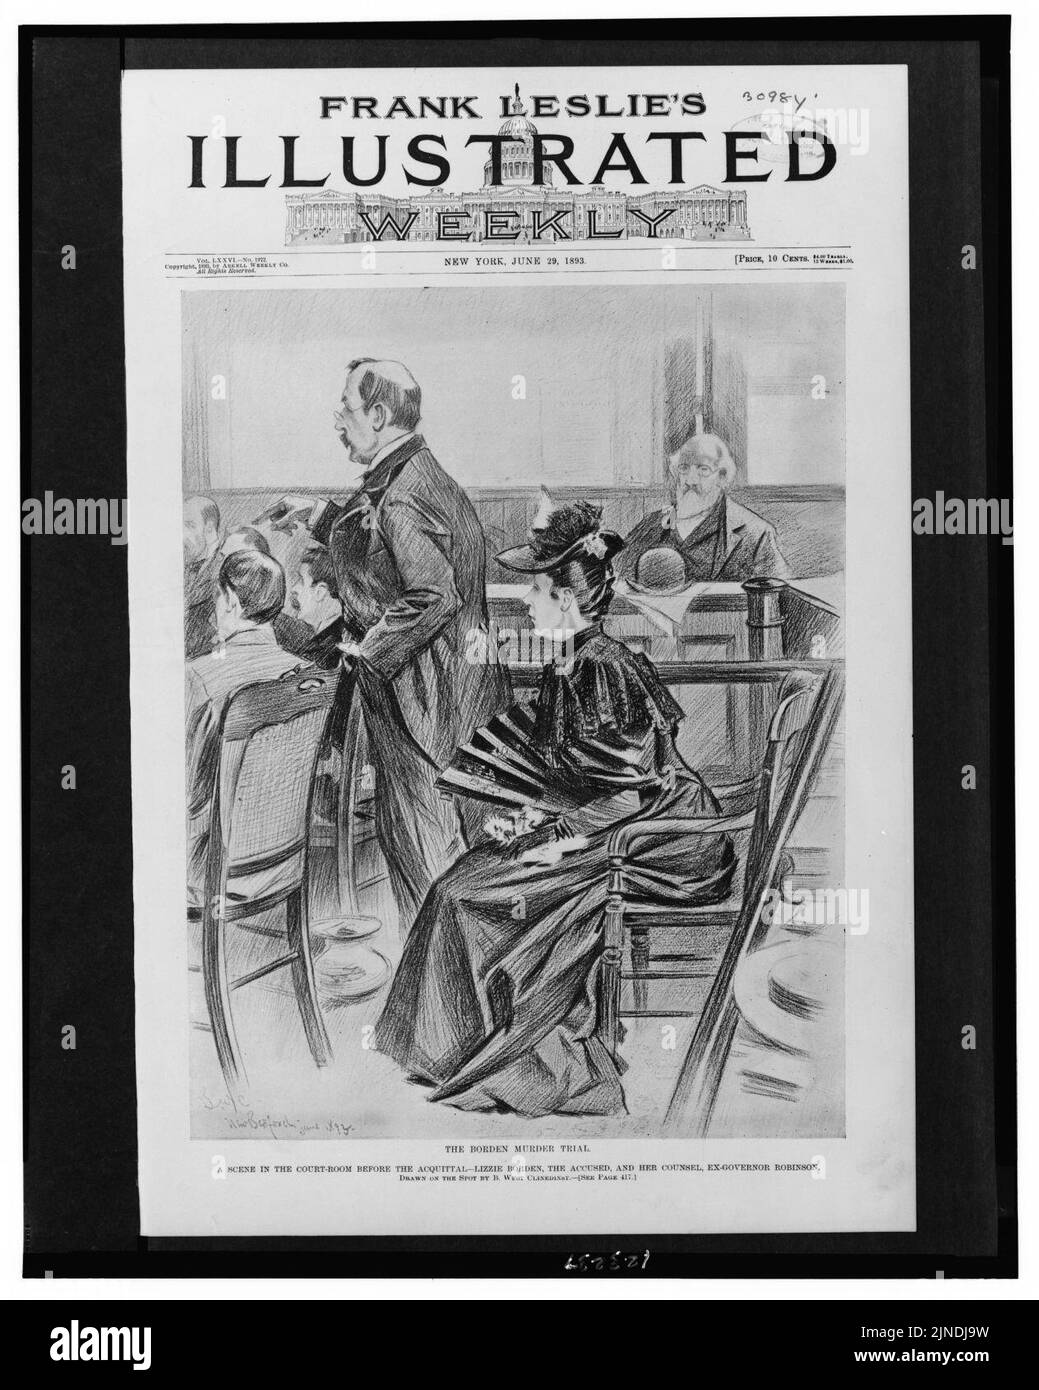 Der Morderprozeß in Borden - Eine Szene im Gerichtssaal vor dem Freispruch - Lizzie Borden, die Angeklagte, und ihr Anwalt, Ex-Gouverneur Robinson - vor Ort von B. West Clinedinst gezeichnet. Stockfoto